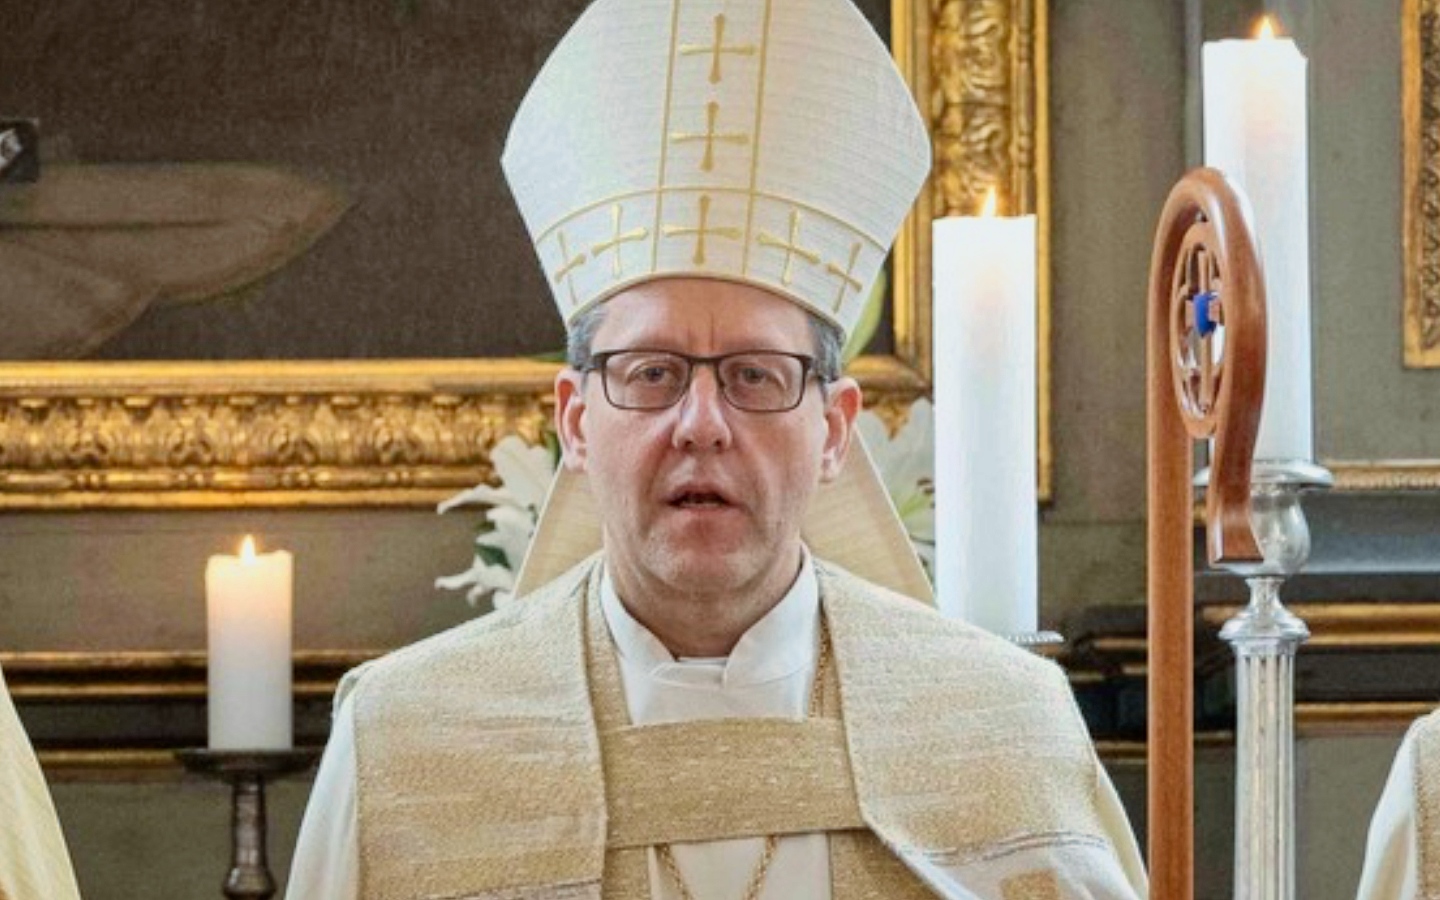 Tallinna Piiskoplikus Toomkirikus 1. mai keskpäeval toimuval pidulikul jumalateenistusel seatakse piiskop Ove Sander ametisse Põhja-Eesti piiskopkonna piiskopin